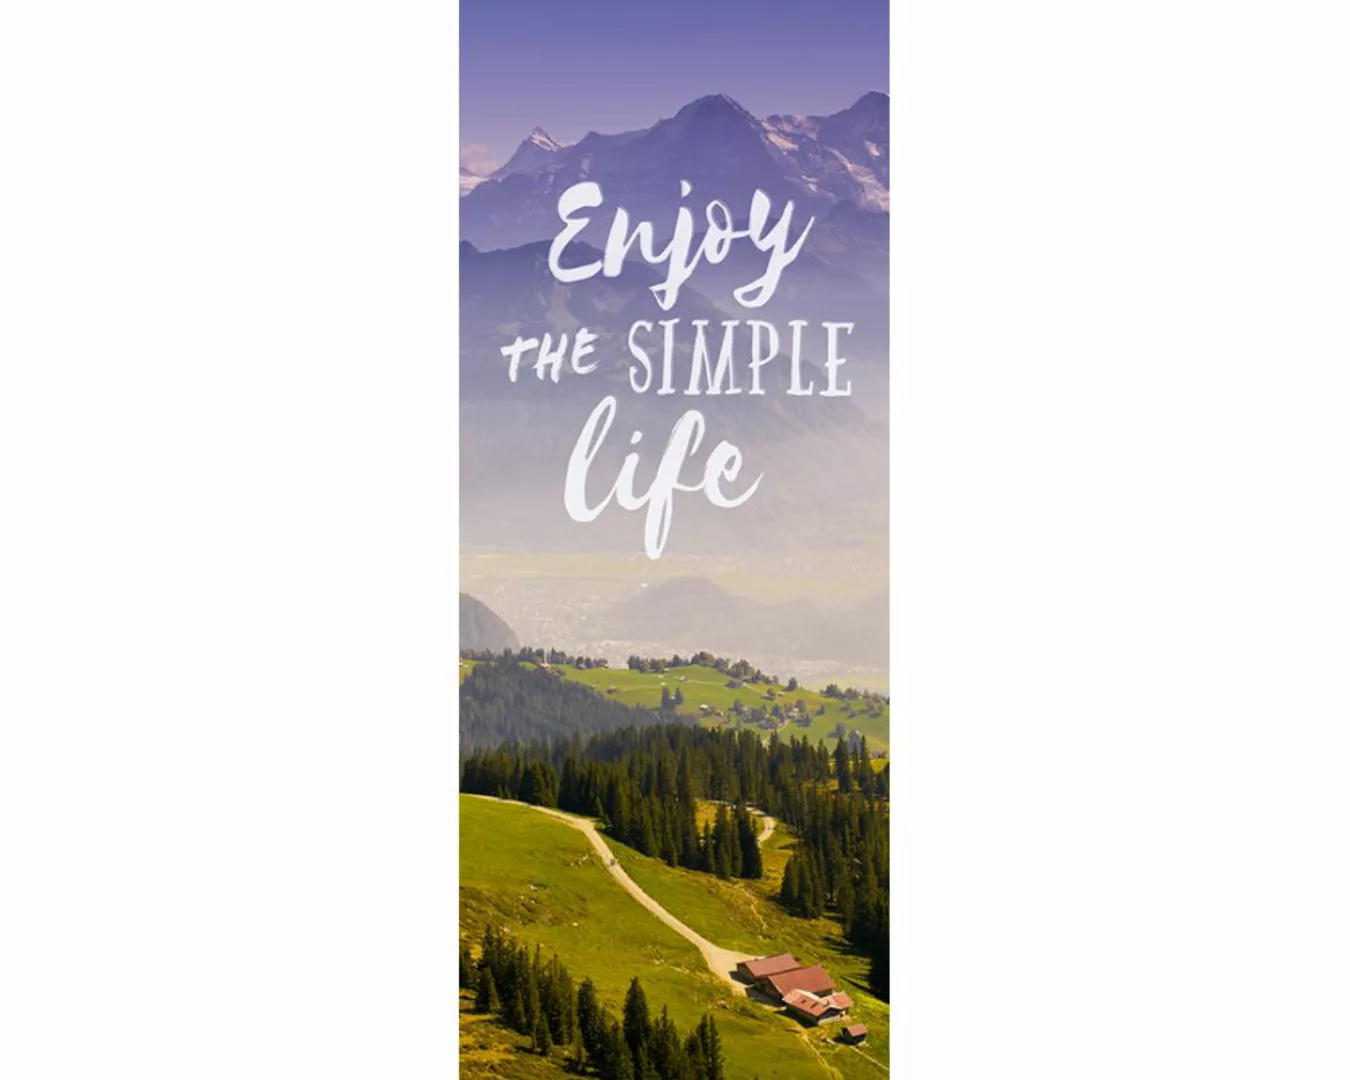 Dekopanel "Enjoy life" 1,00x2,50 m / selbstklebende Folie günstig online kaufen